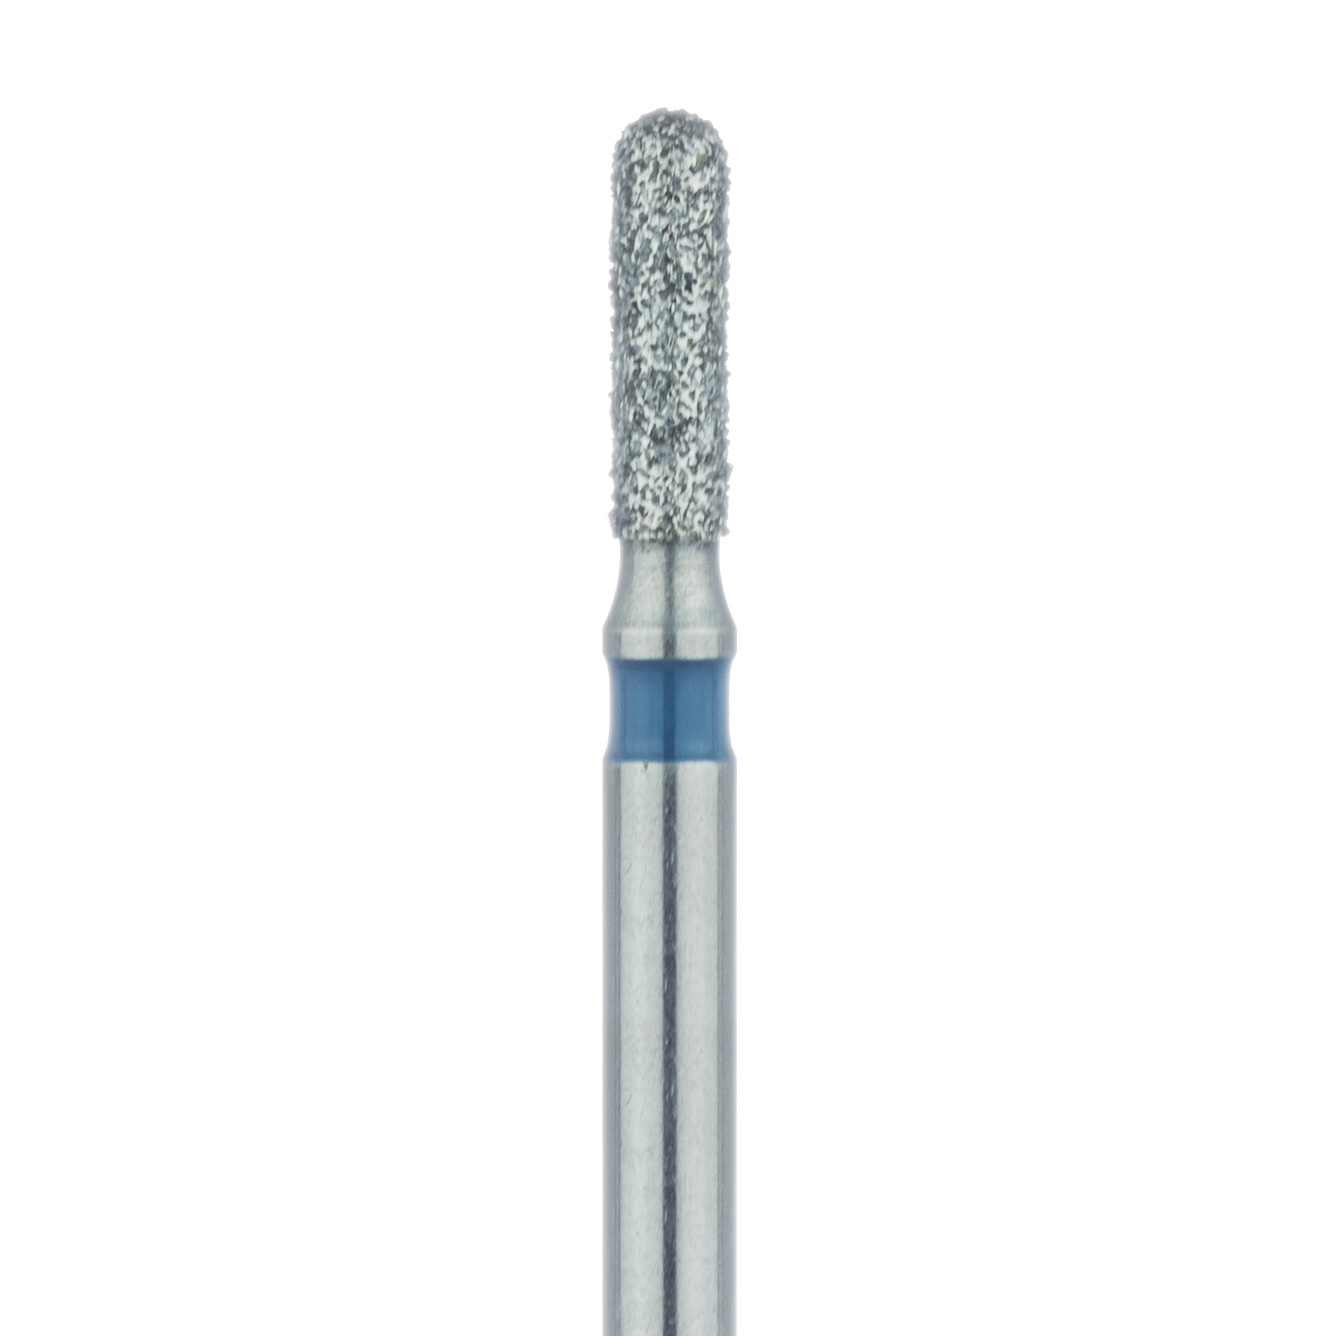 880-014-FG Round End Cylinder Diamond Bur, 1.4mm Ø, Medium, FG